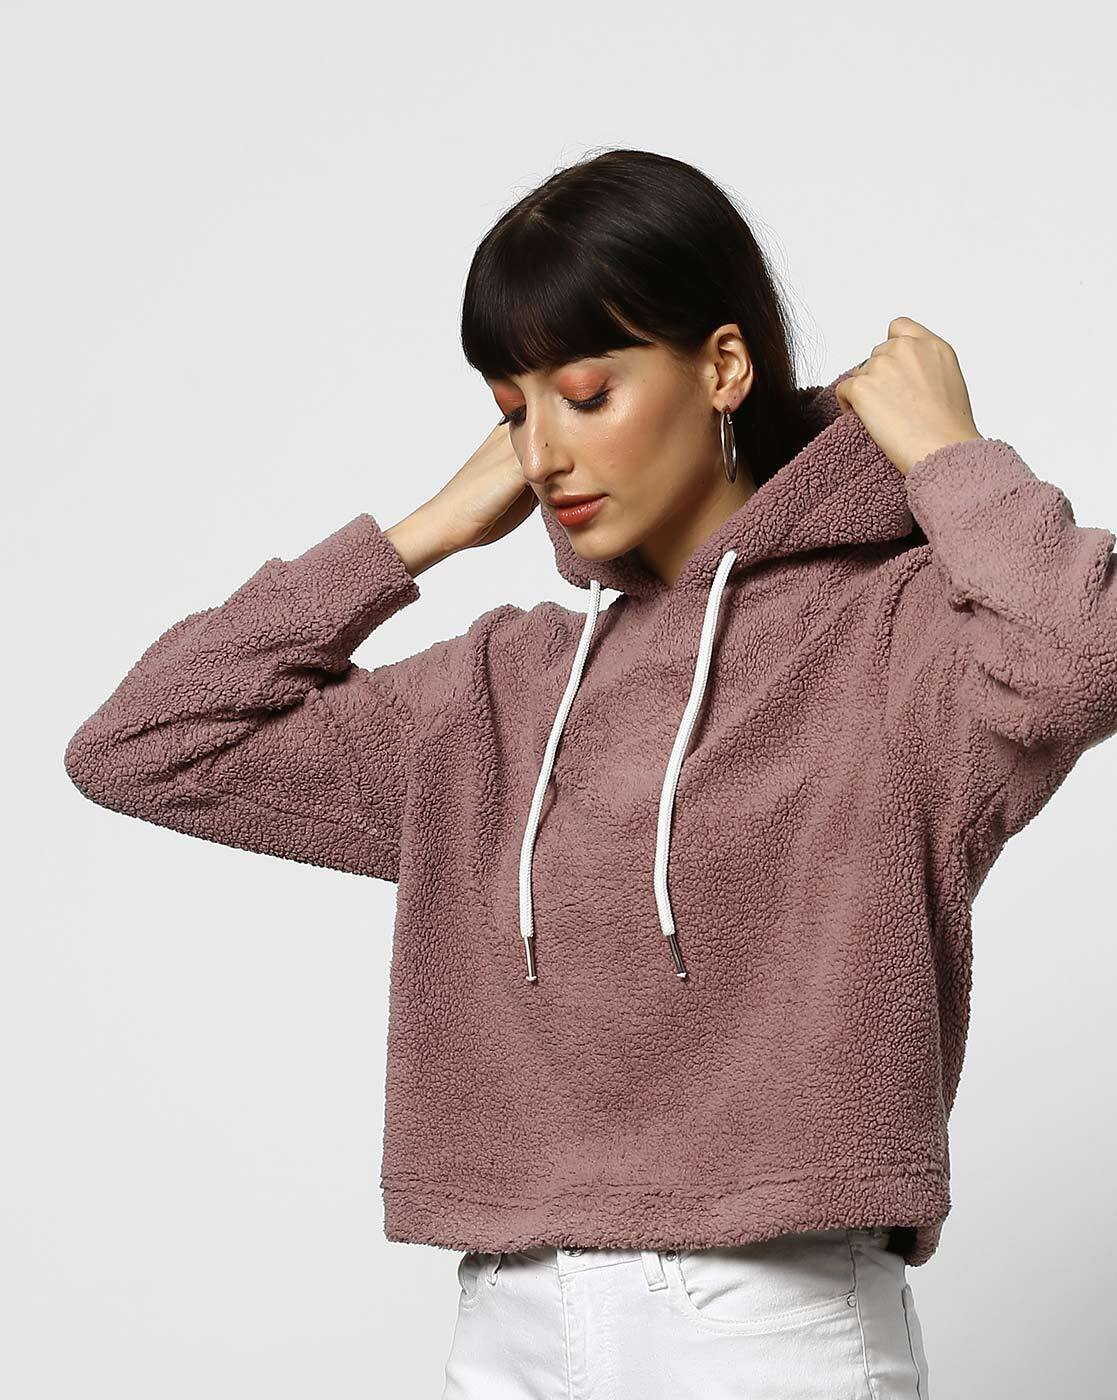 Hoodies for Women - Buy Sweatshirts for Women Online in India